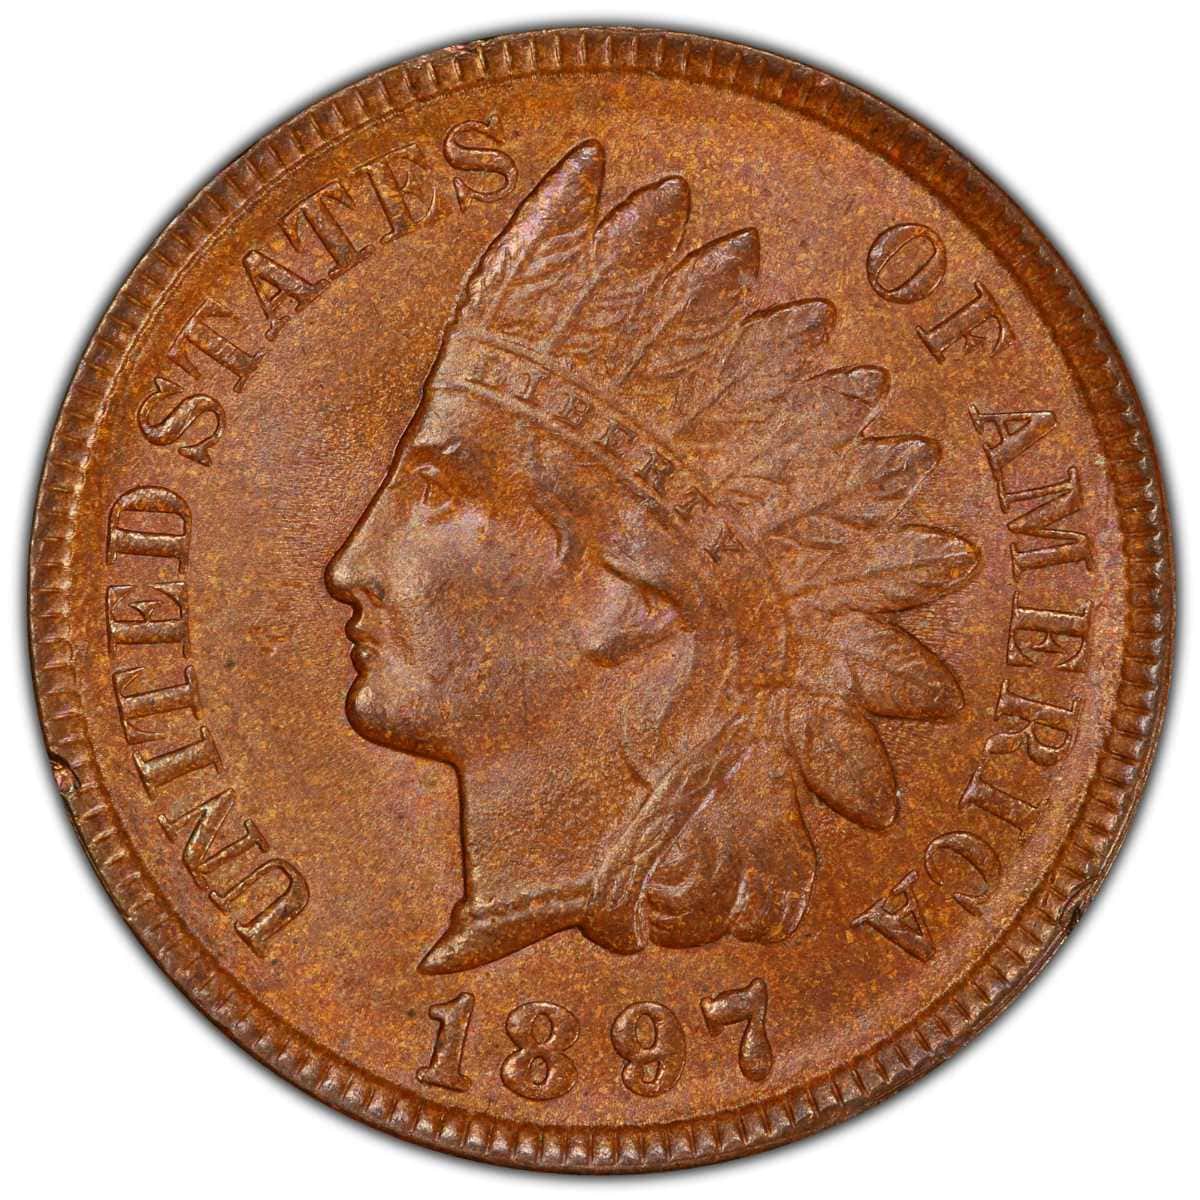 1897 Indian Head Penny Values1897 Indian Head Penny Values